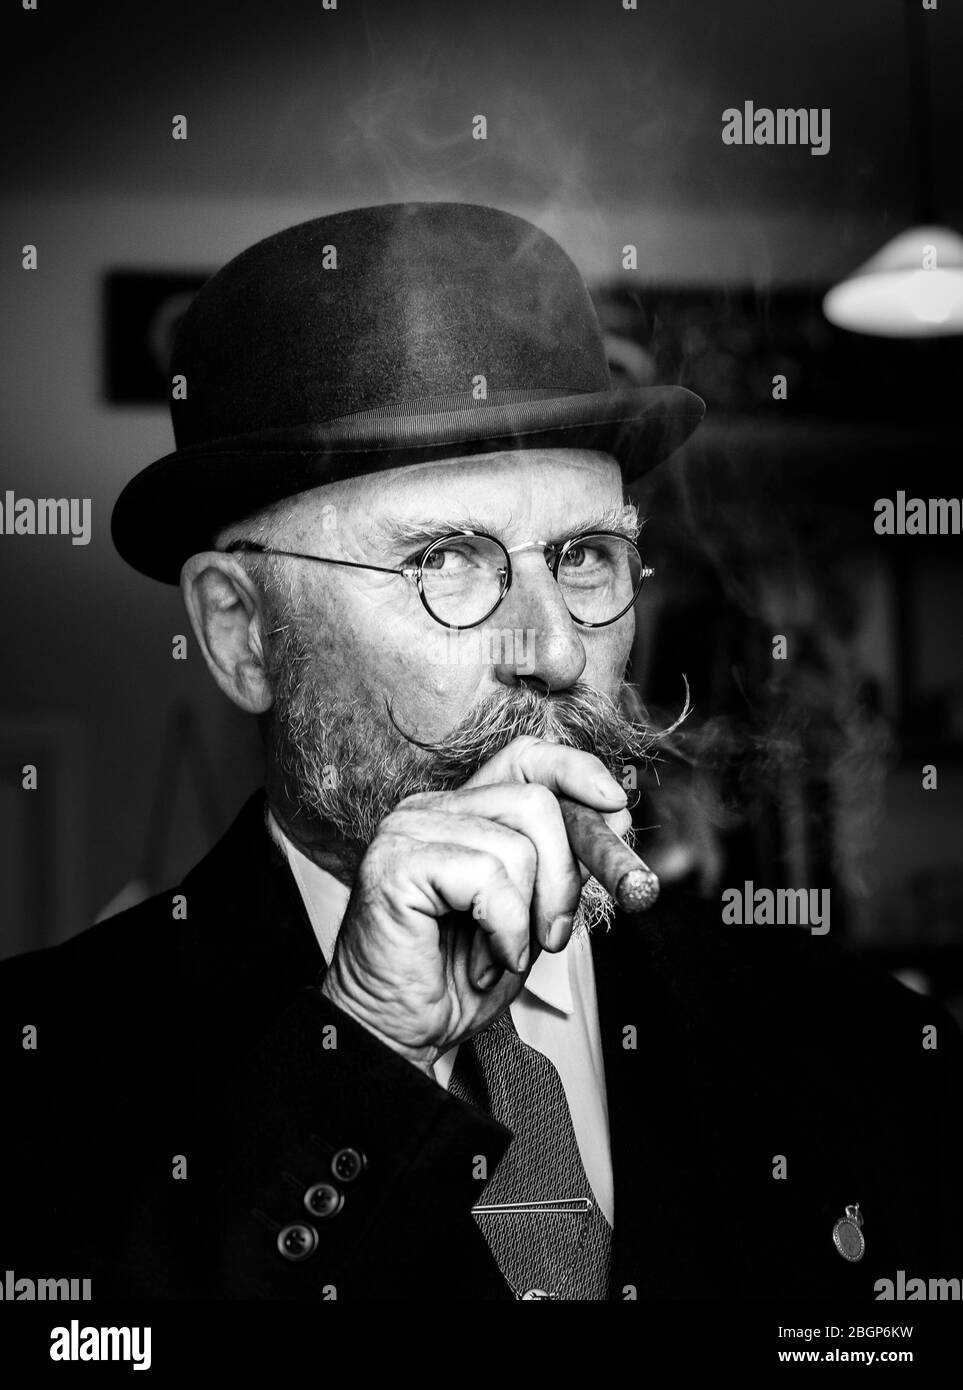 Ritratto monocromo in primo piano dell'uomo britannico degli anni '40 con baffi da manubrio e sigaro fumatore bowler, evento estivo britannico degli anni '40. Foto Stock